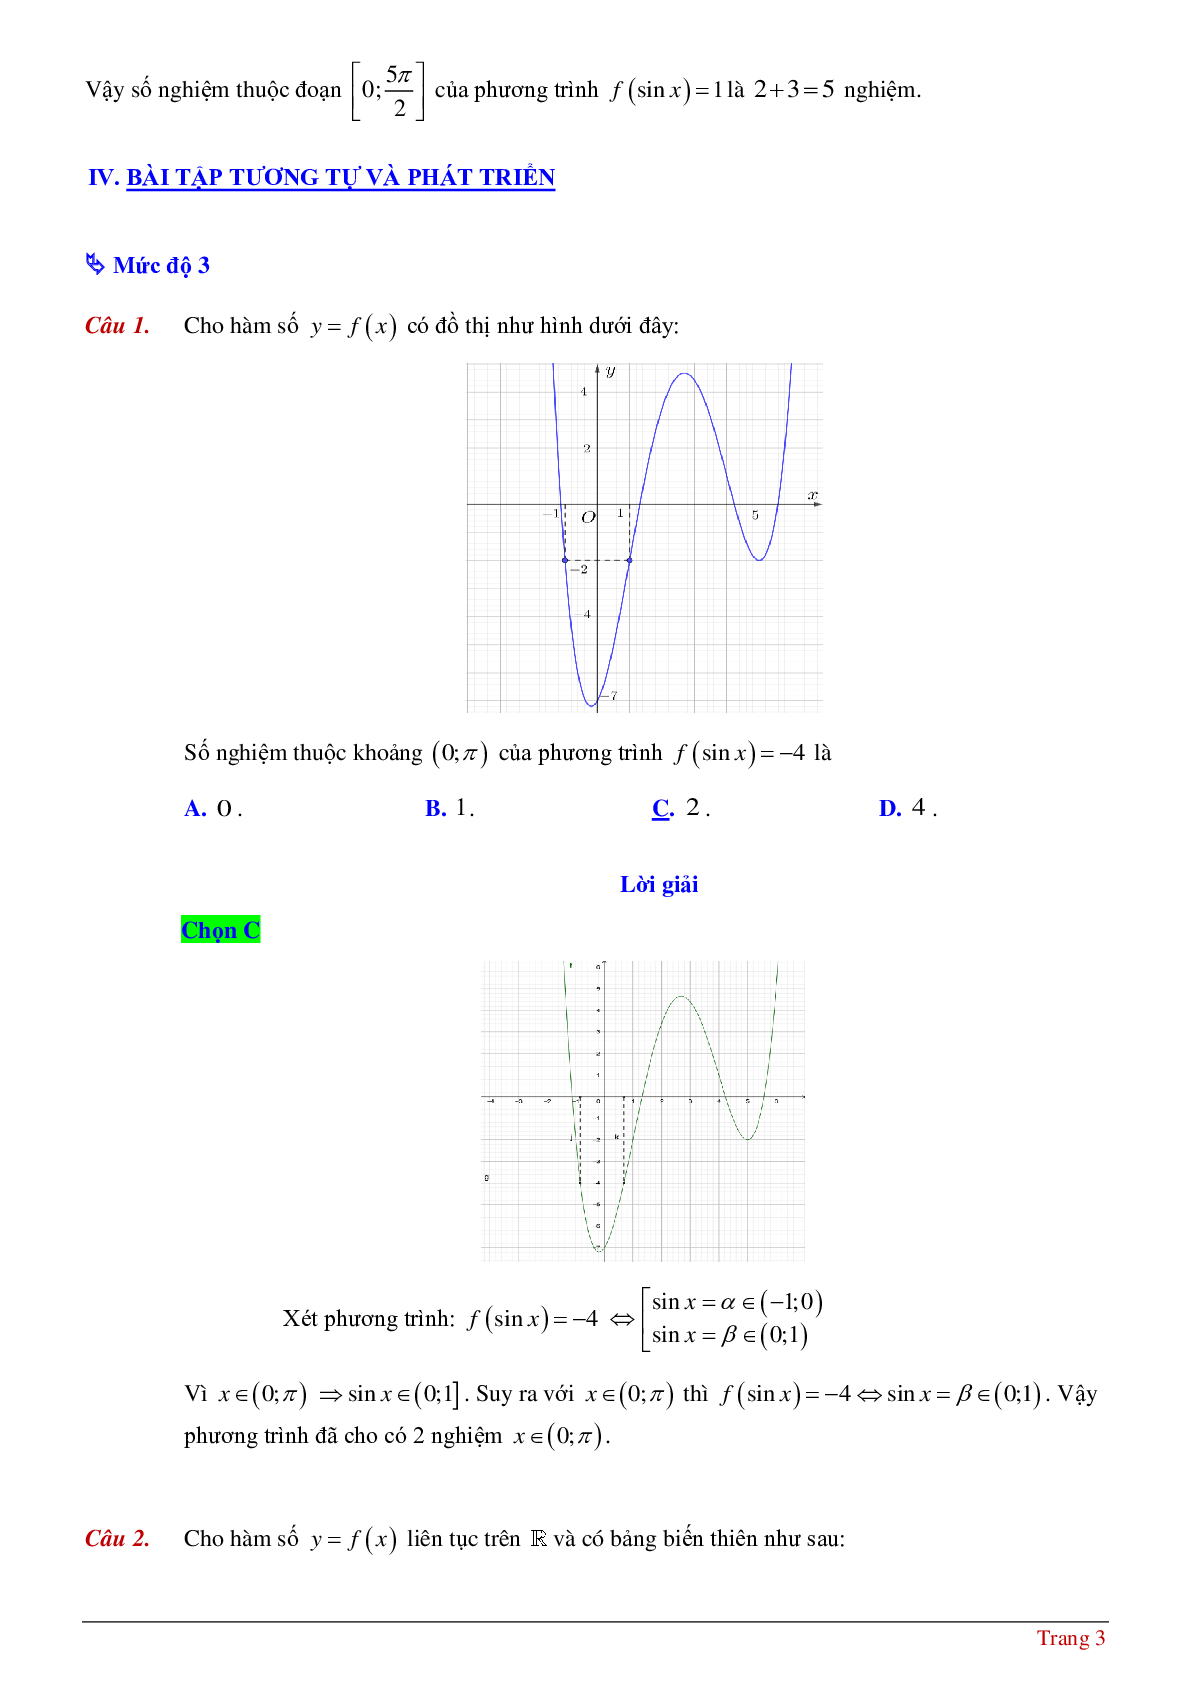 Tìm số nghiệm của phương tình hàm hợp khi biết bảng biến thiên hoặc đồ thị (trang 3)